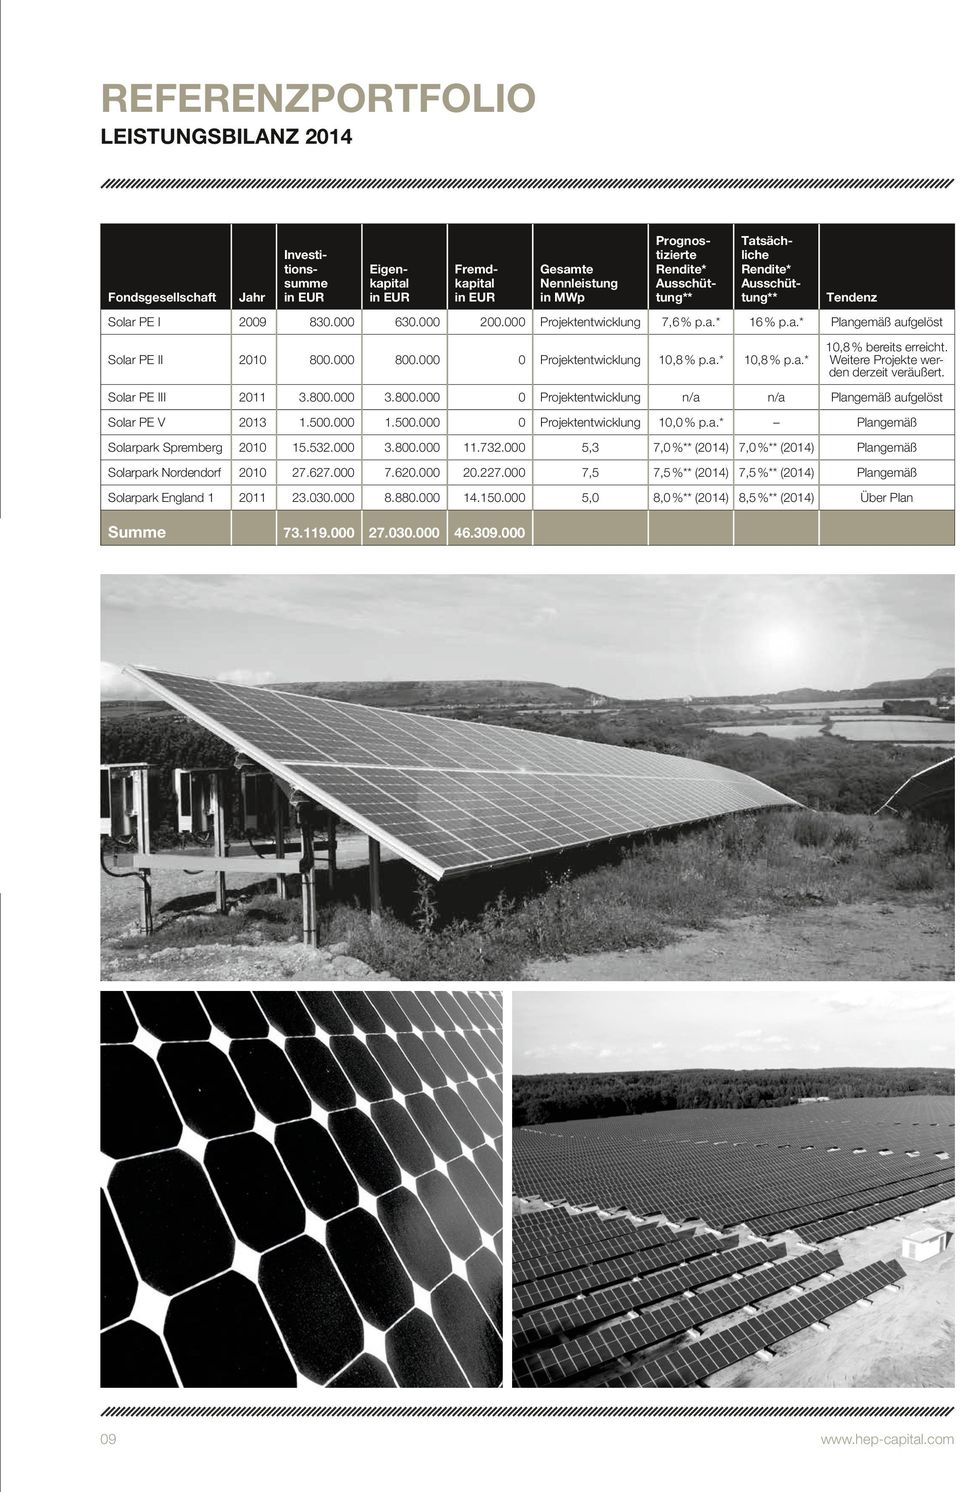 000 0 Projektentwicklung 10,8 % p.a.* 10,8 % p.a.* 10,8 % bereits erreicht. Weitere Projekte werden derzeit veräußert. Solar PE III 2011 3.800.